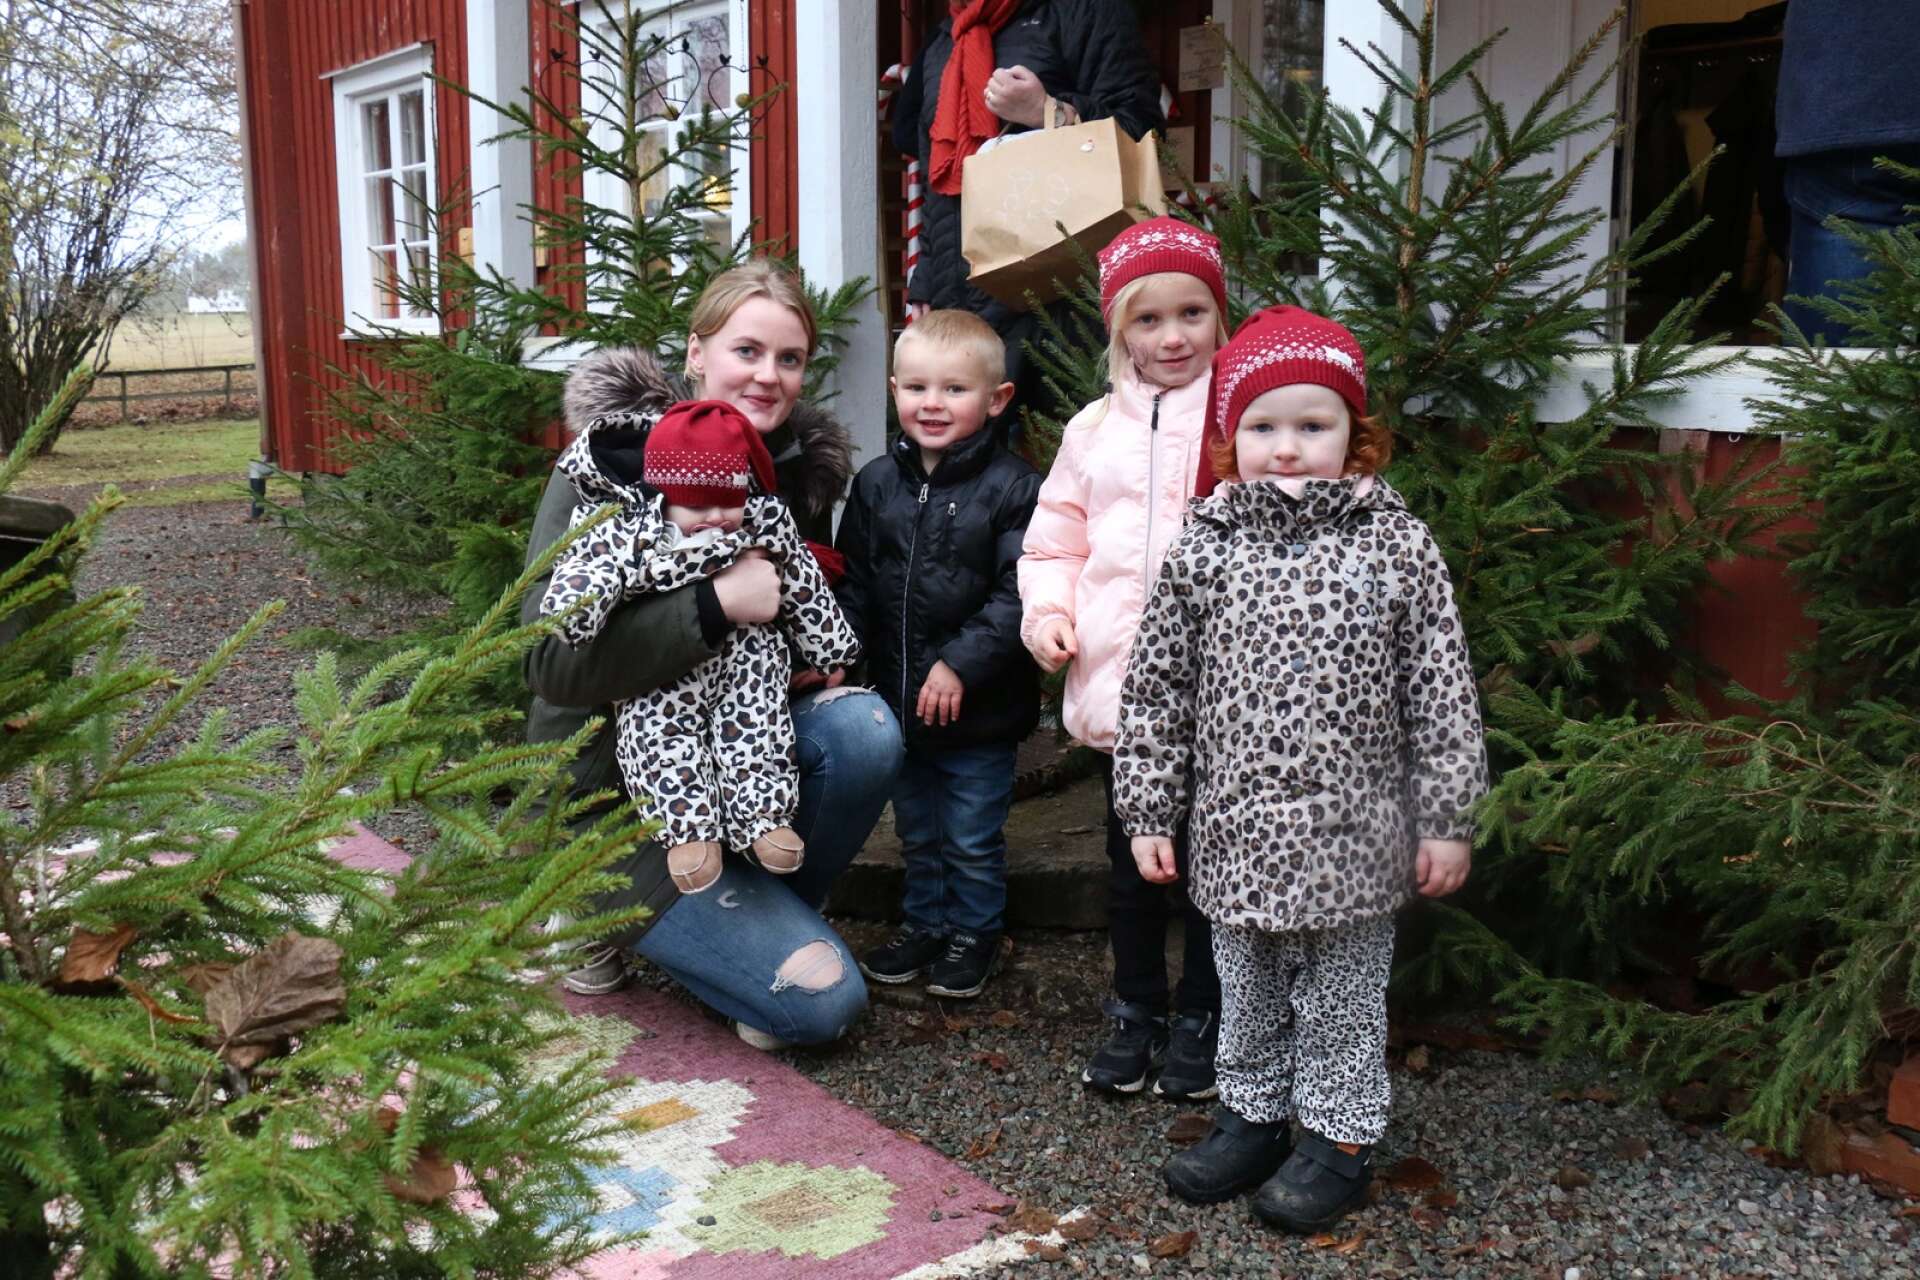 Rebecka Hansen från Väne-Ryr trivdes på Alltorps julmarknad. Här med brorsbarnet Nova på armen och hennes egna barn Arvid och Sigrid samt kompisen Mira längst till höger i bild.